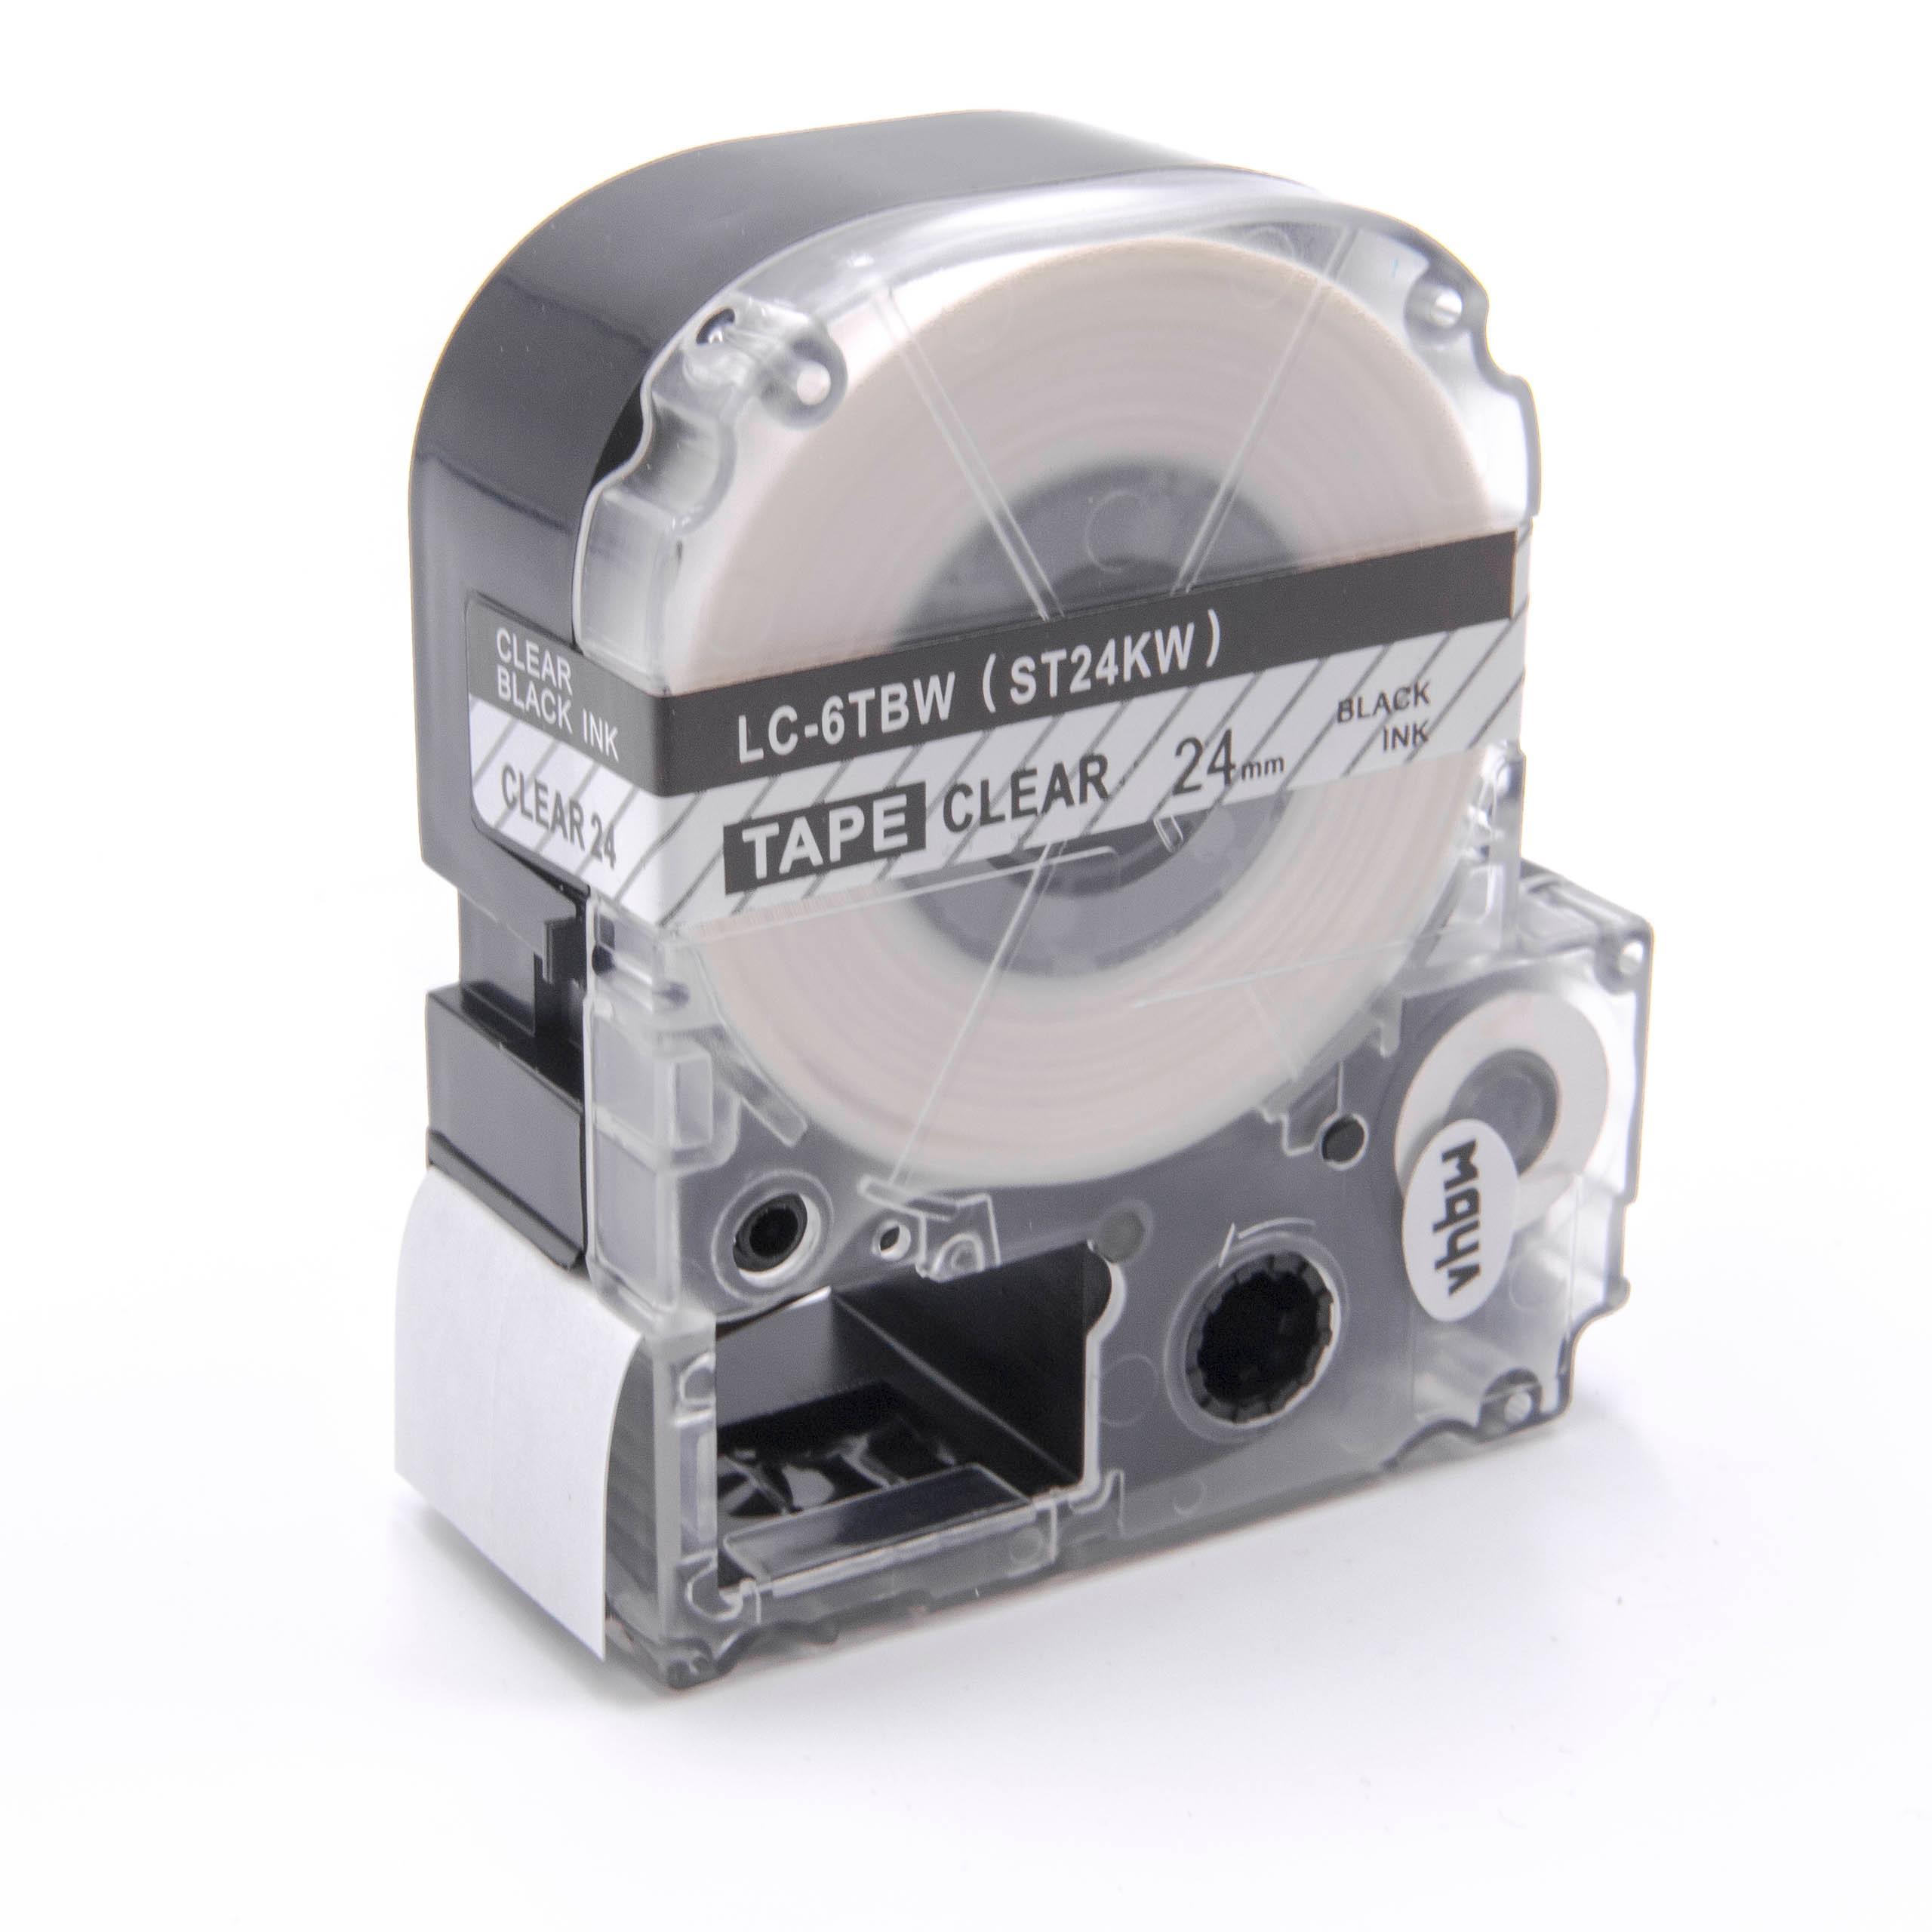 Cassetta nastro sostituisce Epson LC-6TBW per etichettatrice Epson 24mm nero su trasparente